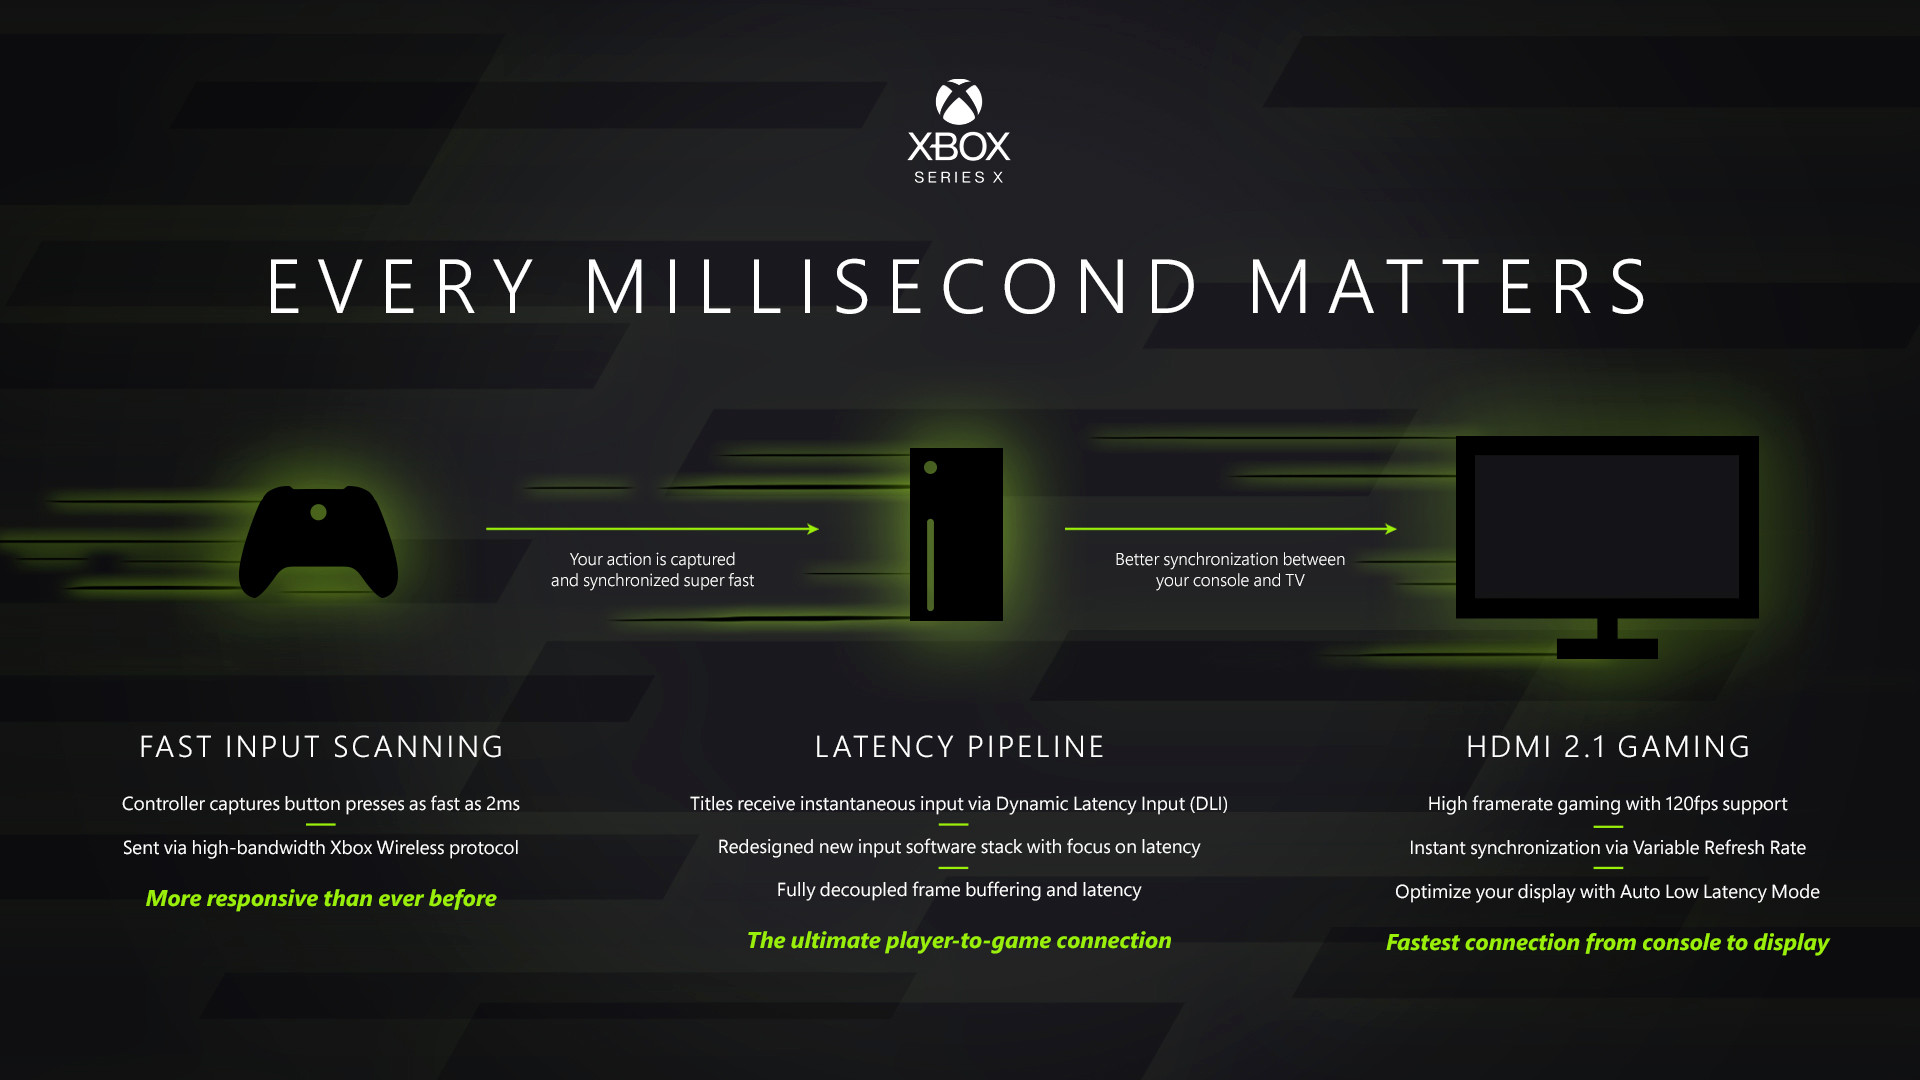 Xbox Series X: ¿Cuál es el trato con la latencia?